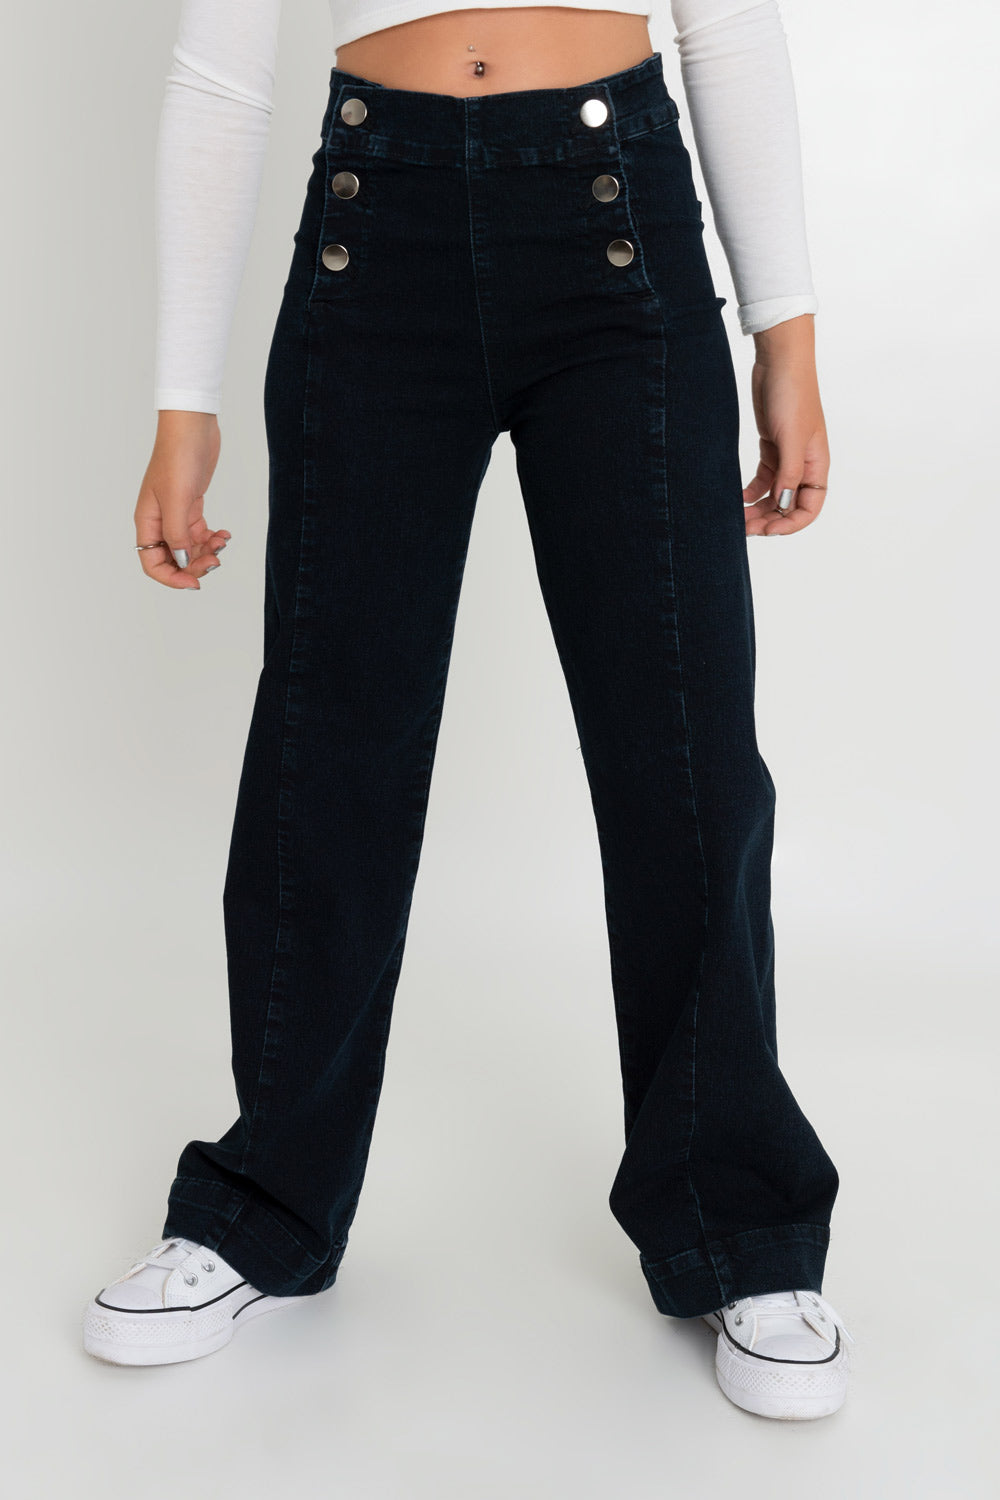 Pantalón marinero denim de fit flare, cintura alta con pretina, cierre frontal con botones en contraste y bolsillos traseros de parche. Detalle de raya frontal y pinzas posteriores.